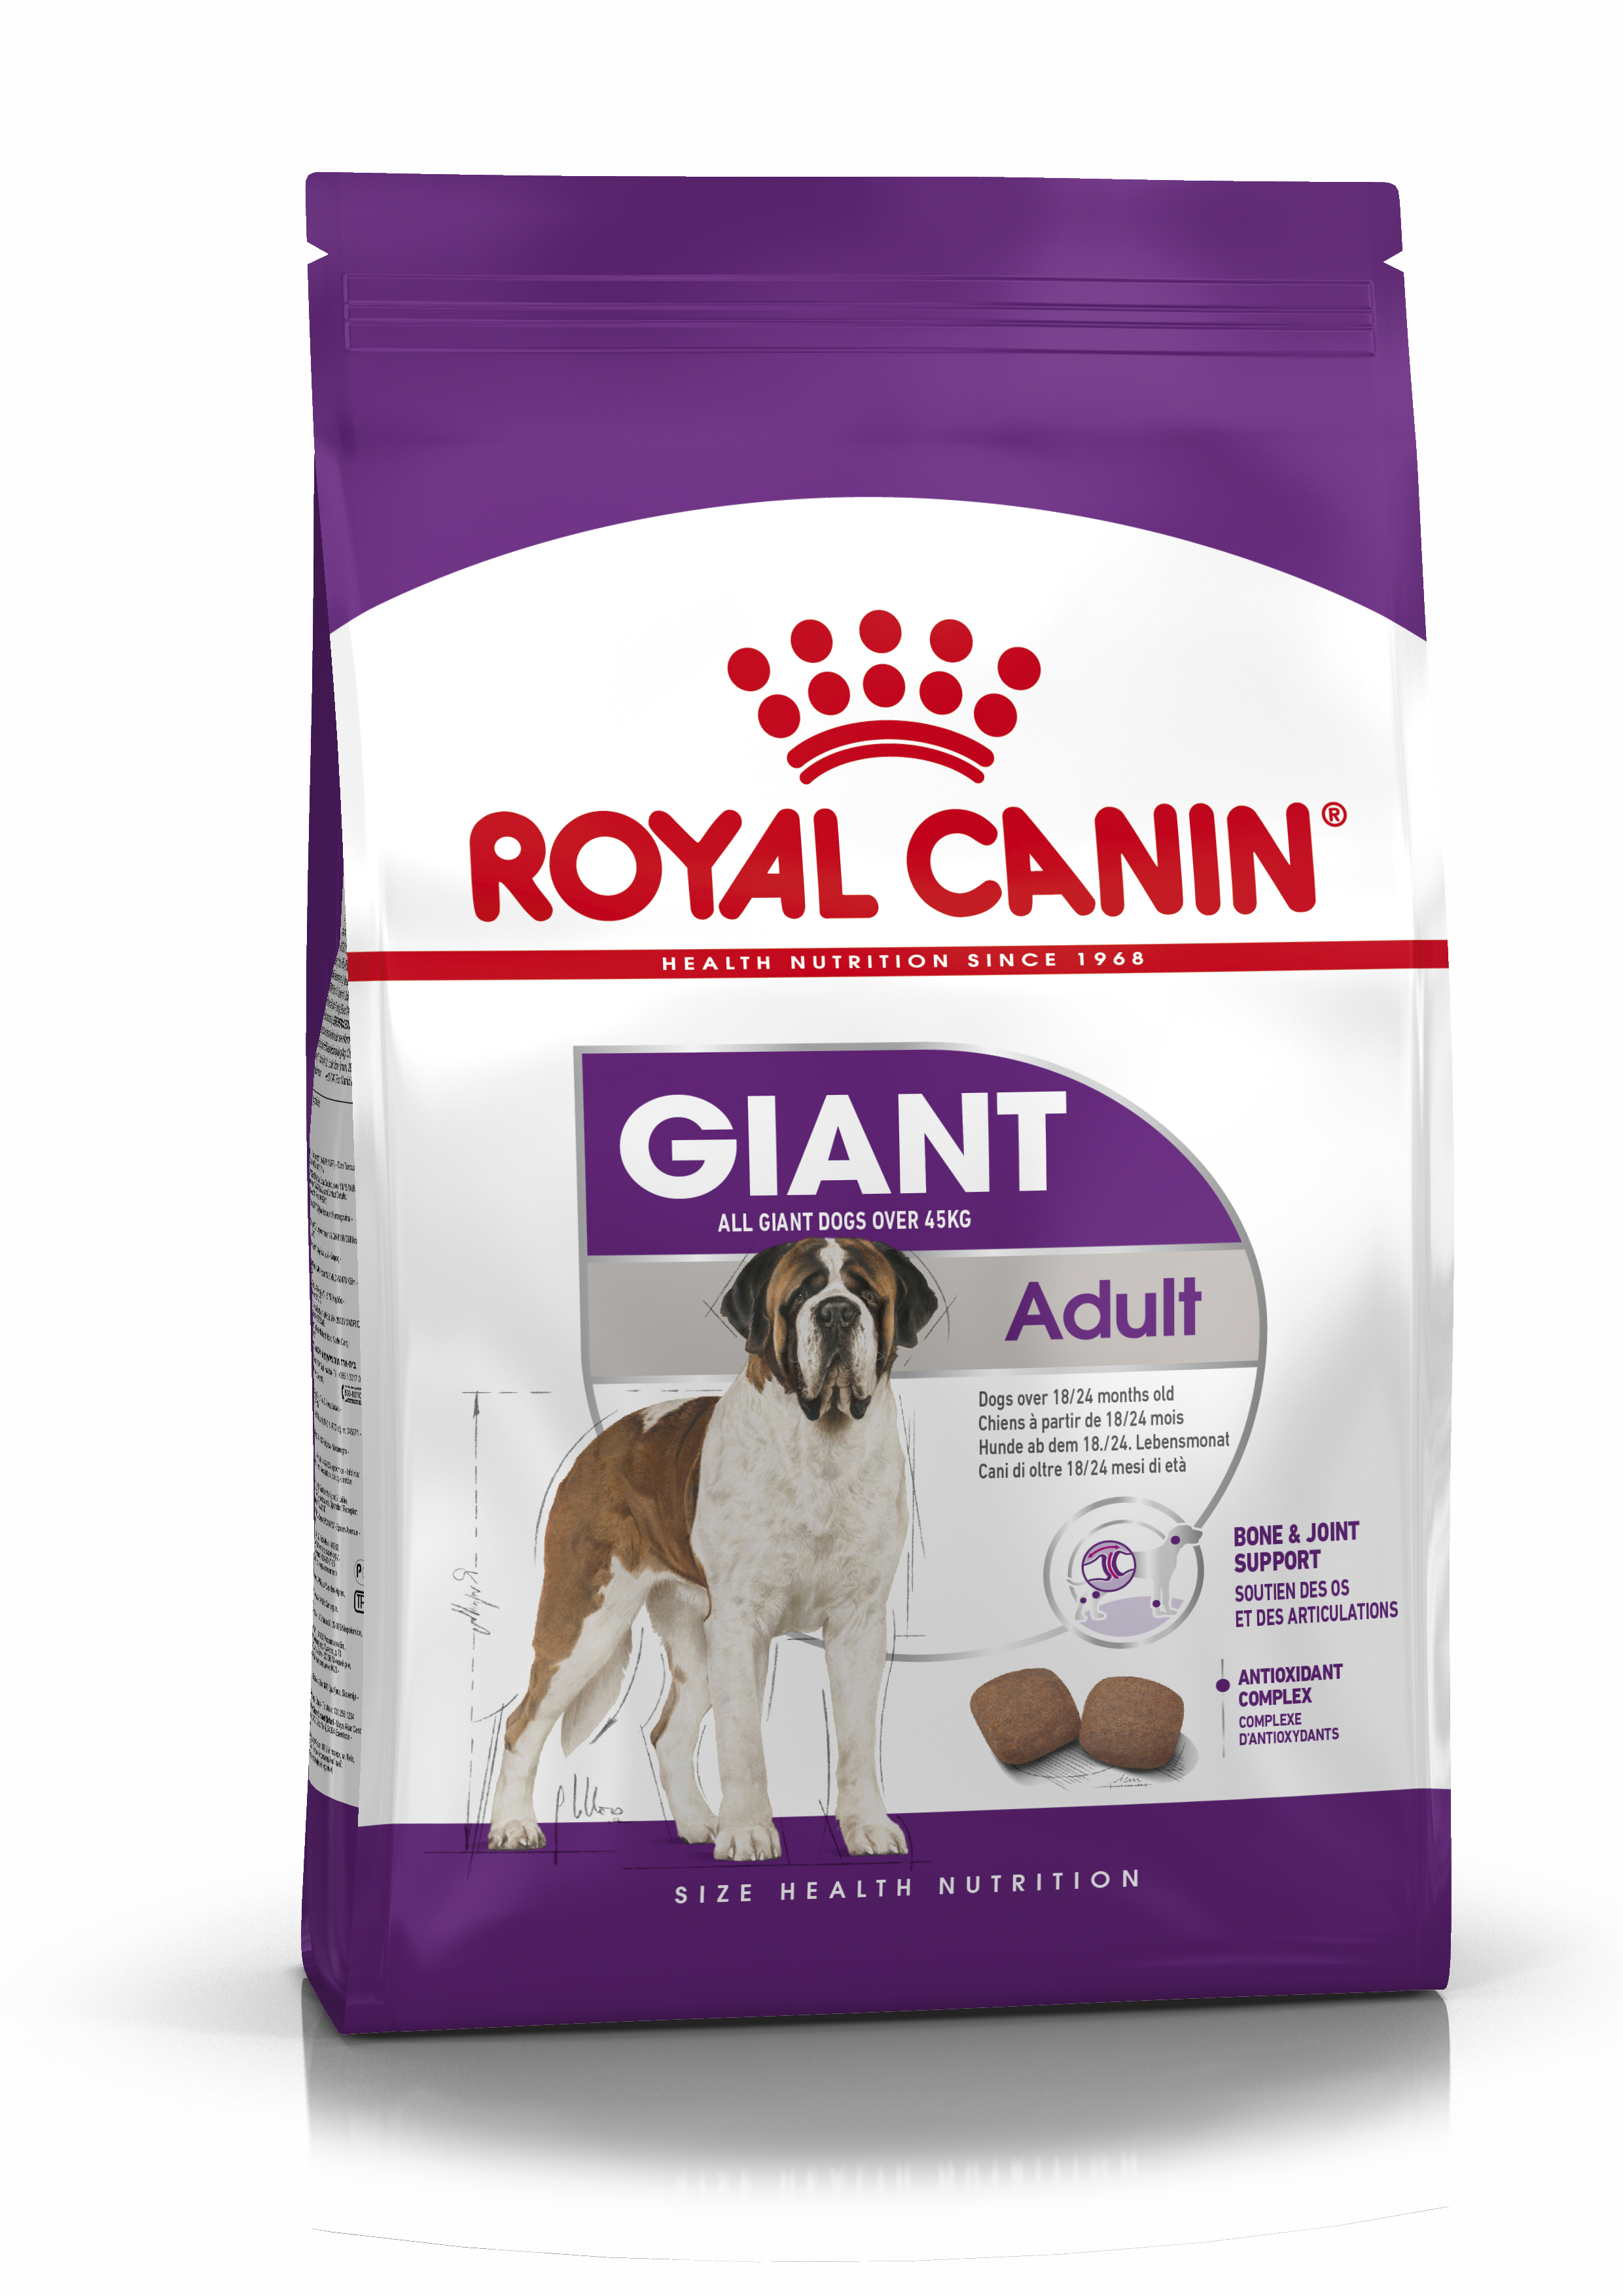 Afbeelding Royal Canin Giant adult hondenvoer 15 + 3 kg gratis door Brekz.nl